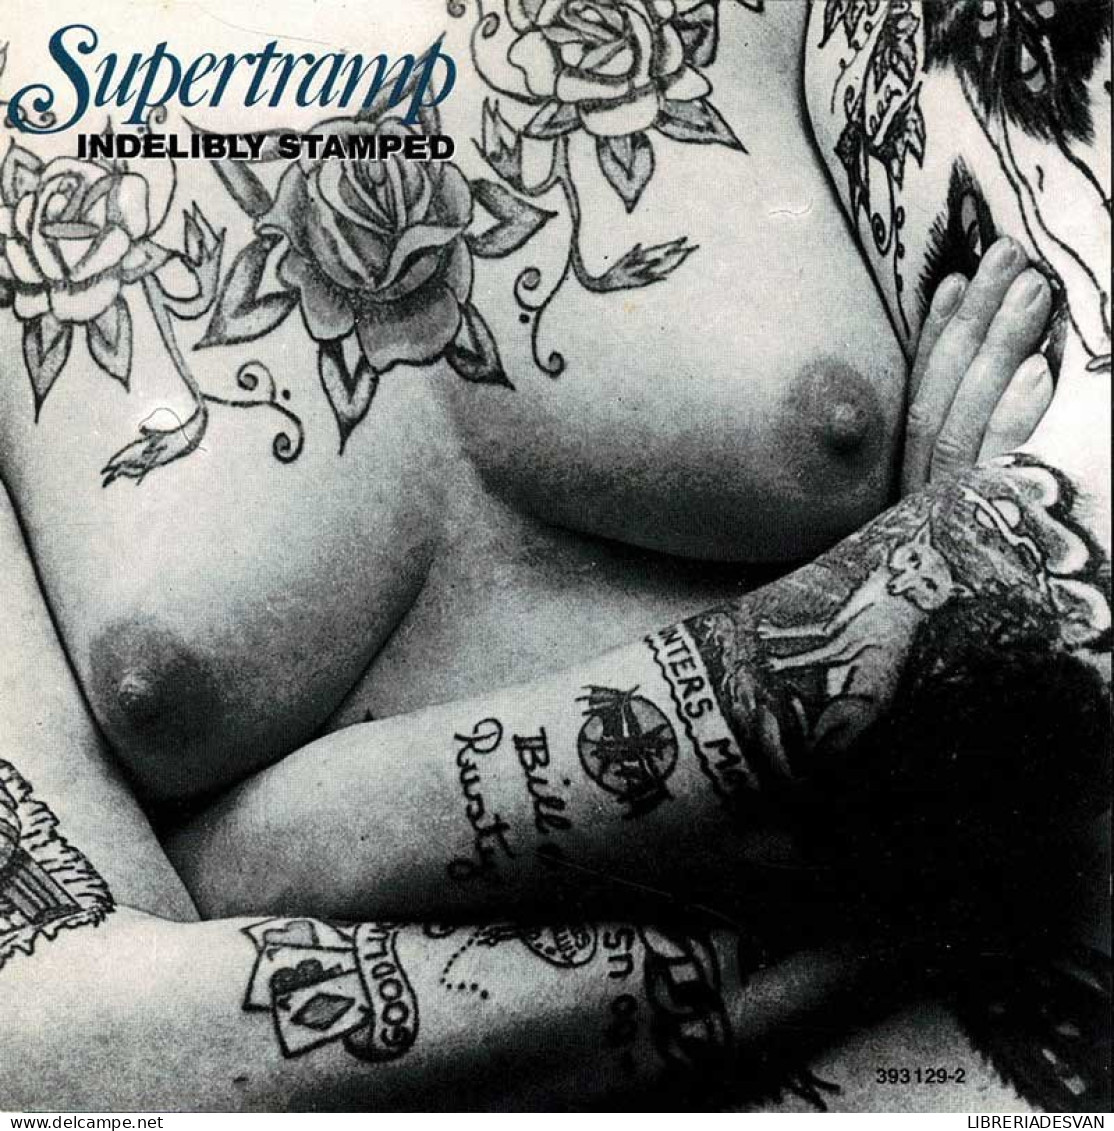 Supertramp - Indelibly Stamped. CD - Rock